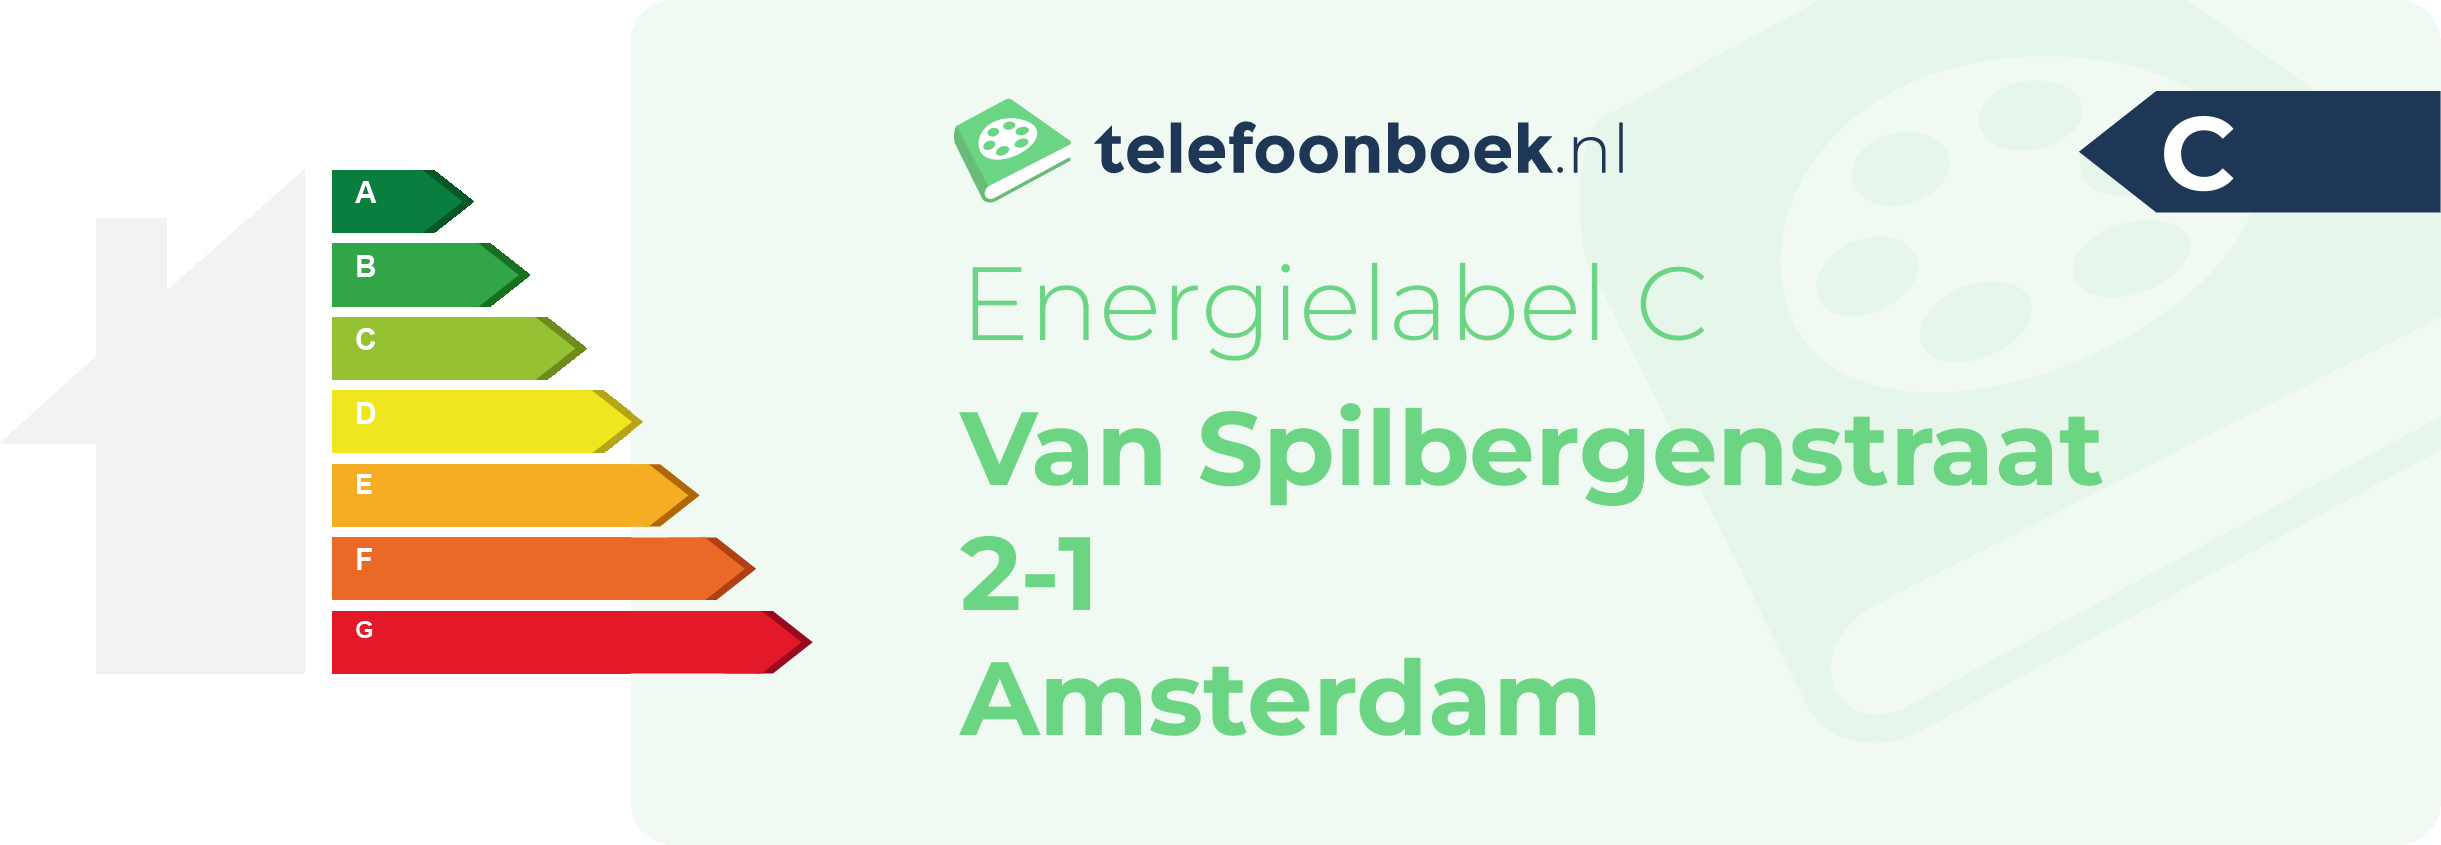 Energielabel Van Spilbergenstraat 2-1 Amsterdam